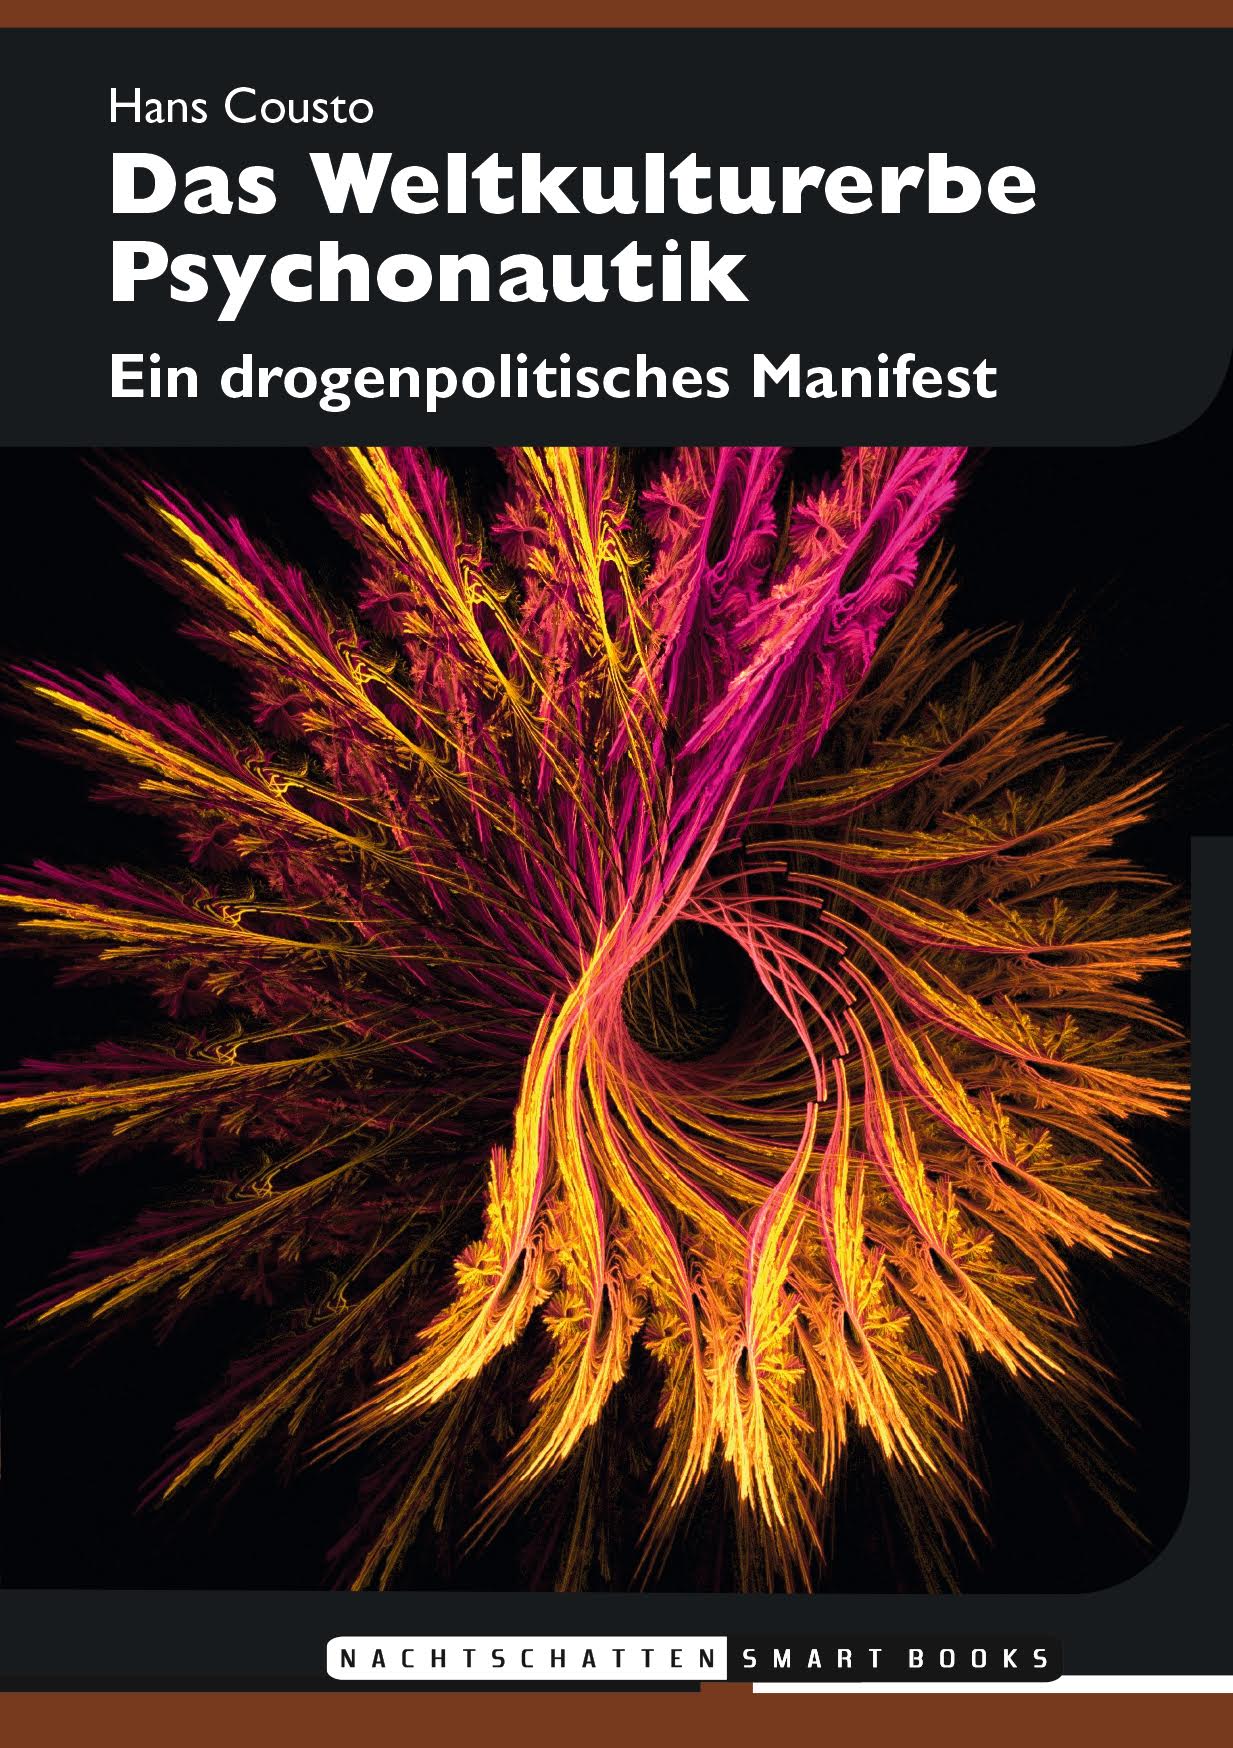 Abbildung 3 zeigt das Cover des Buches „Das Weltkulturerbe Psychonautik – Ein drogenpolitisches Manifest“, Nachtschatten Verlag, Solothurn 2017 (ISBN: 978-3-03788-525-3, 64 Seiten, Format A6 (Smartbook), Broschur: 9.90 Euro, eBook: 4,99 Euro).